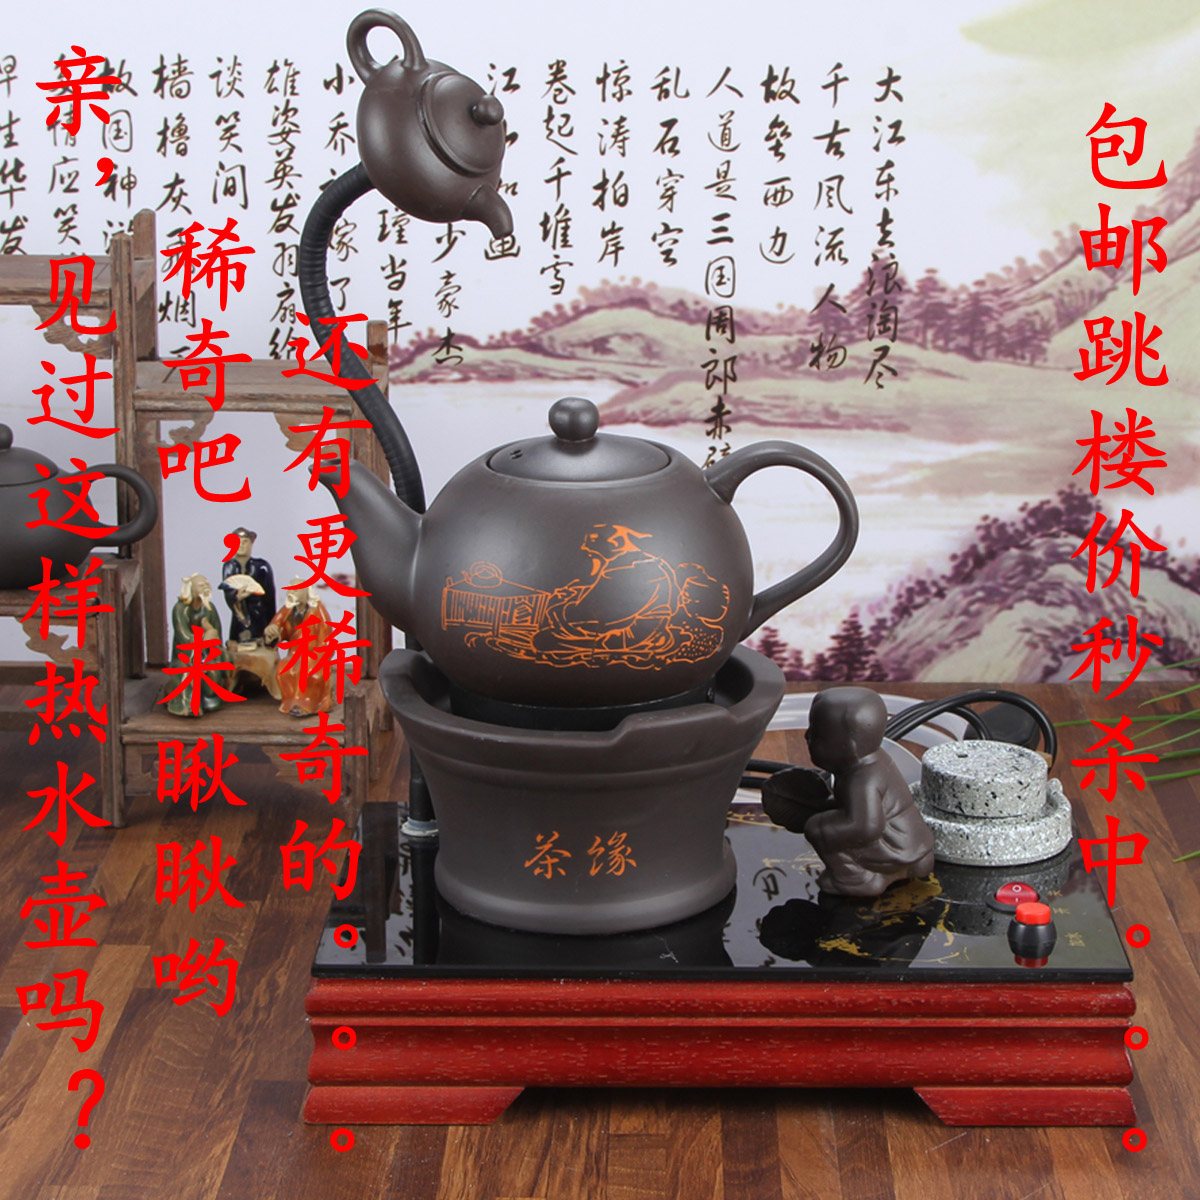 陶瓷自动上水电热水壶自动抽水电热水壶特价包邮正品紫砂壶茶壶